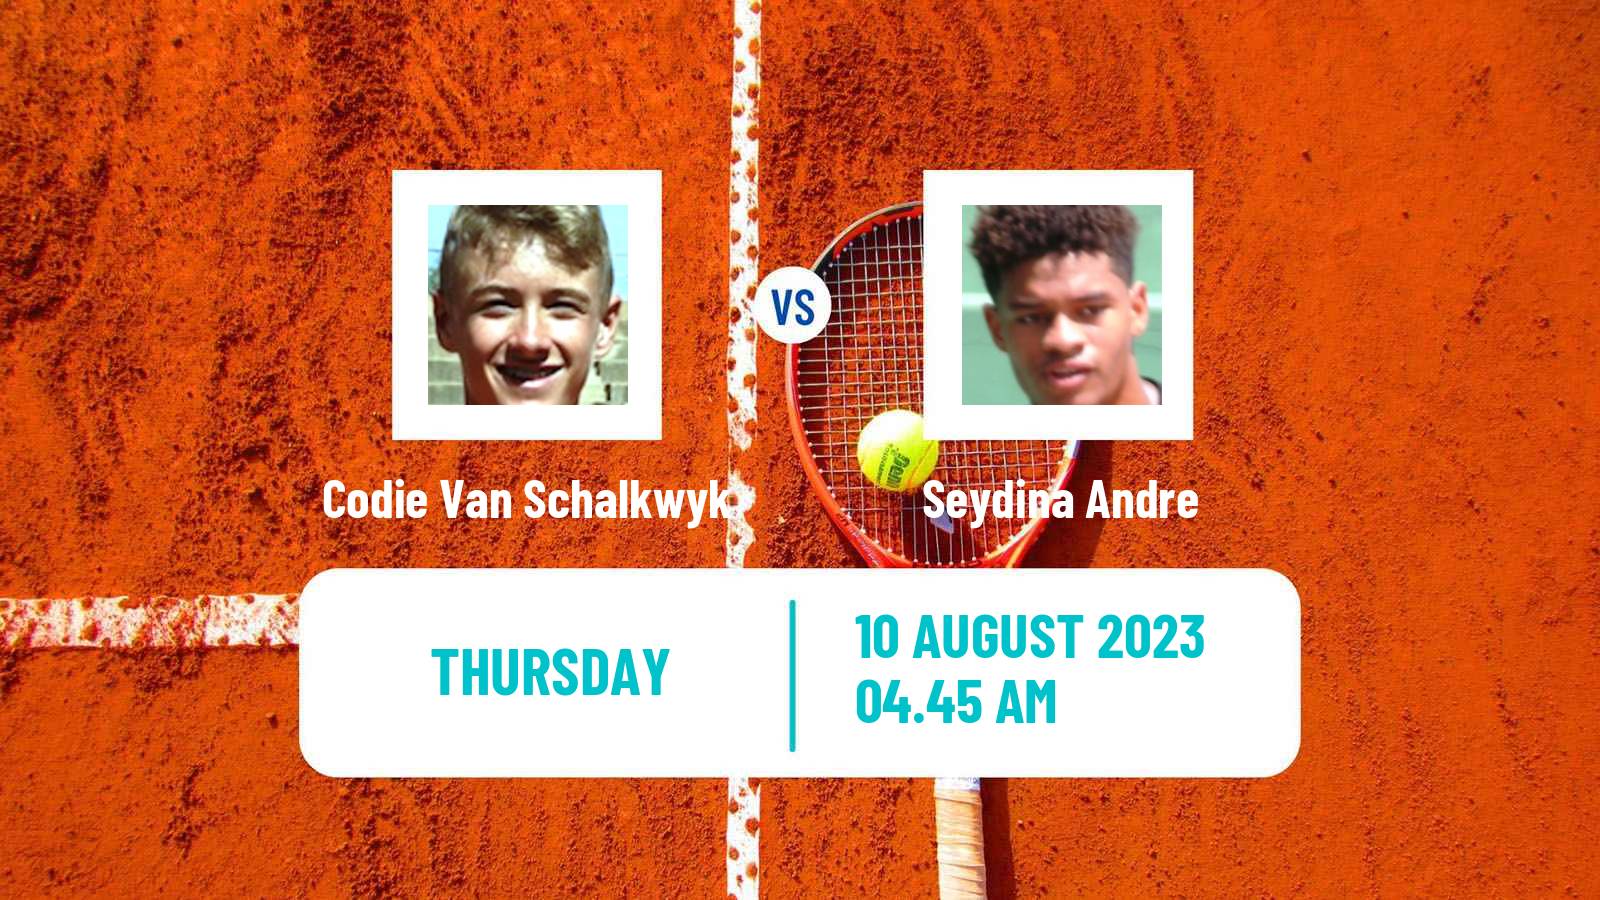 Tennis Davis Cup Group III Codie Van Schalkwyk - Seydina Andre